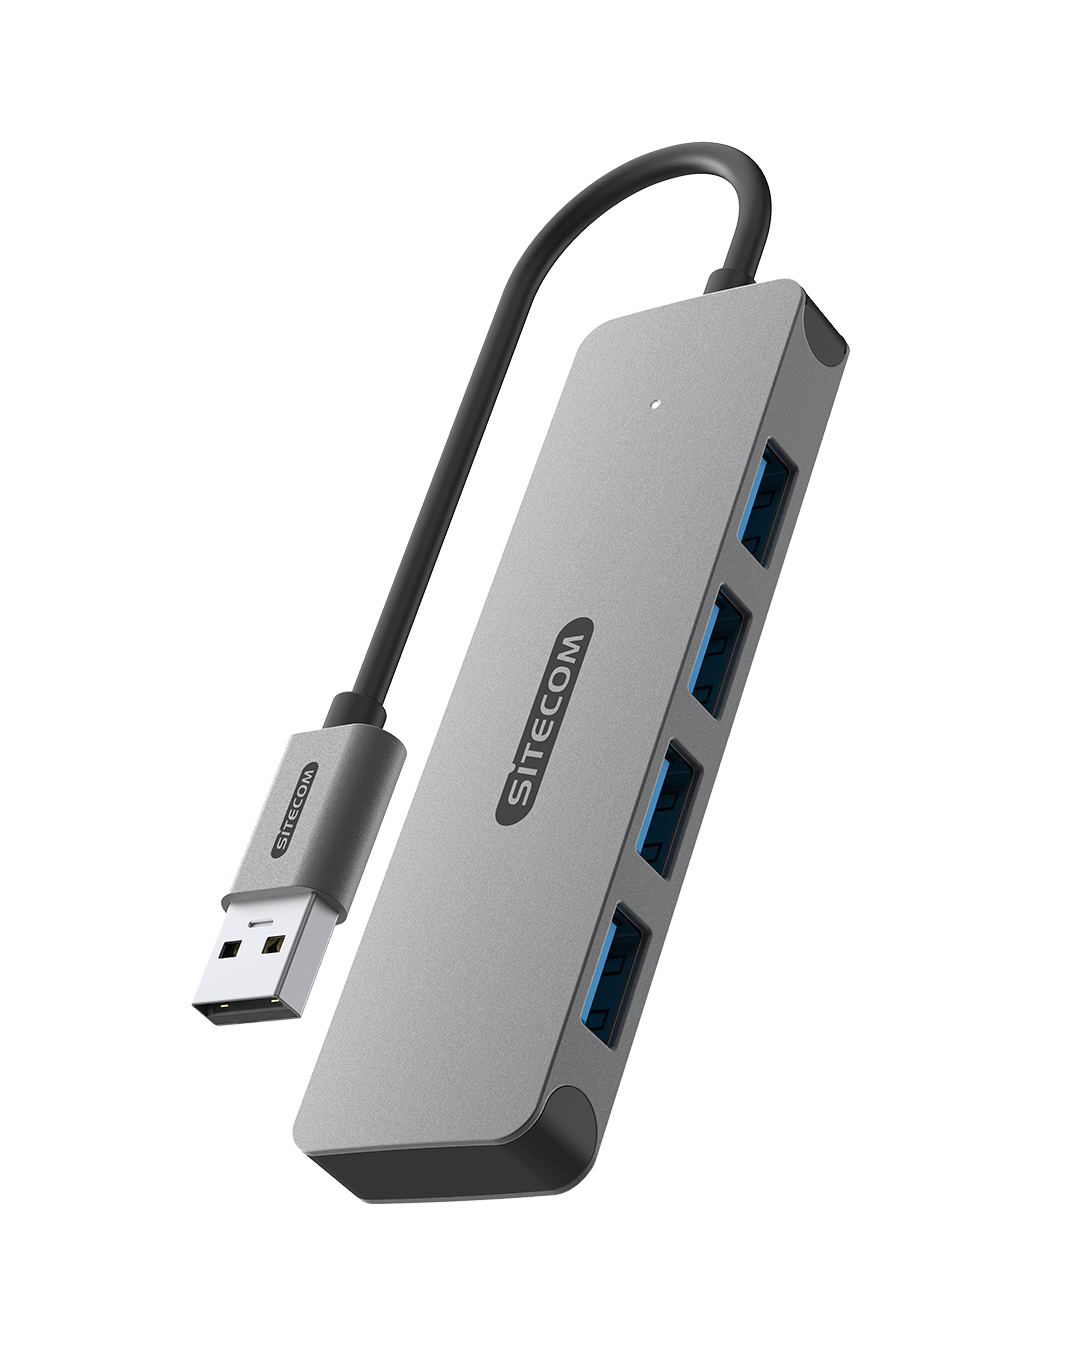 Sitecom - USB-A to 4x USB-A Hub - CN-5005